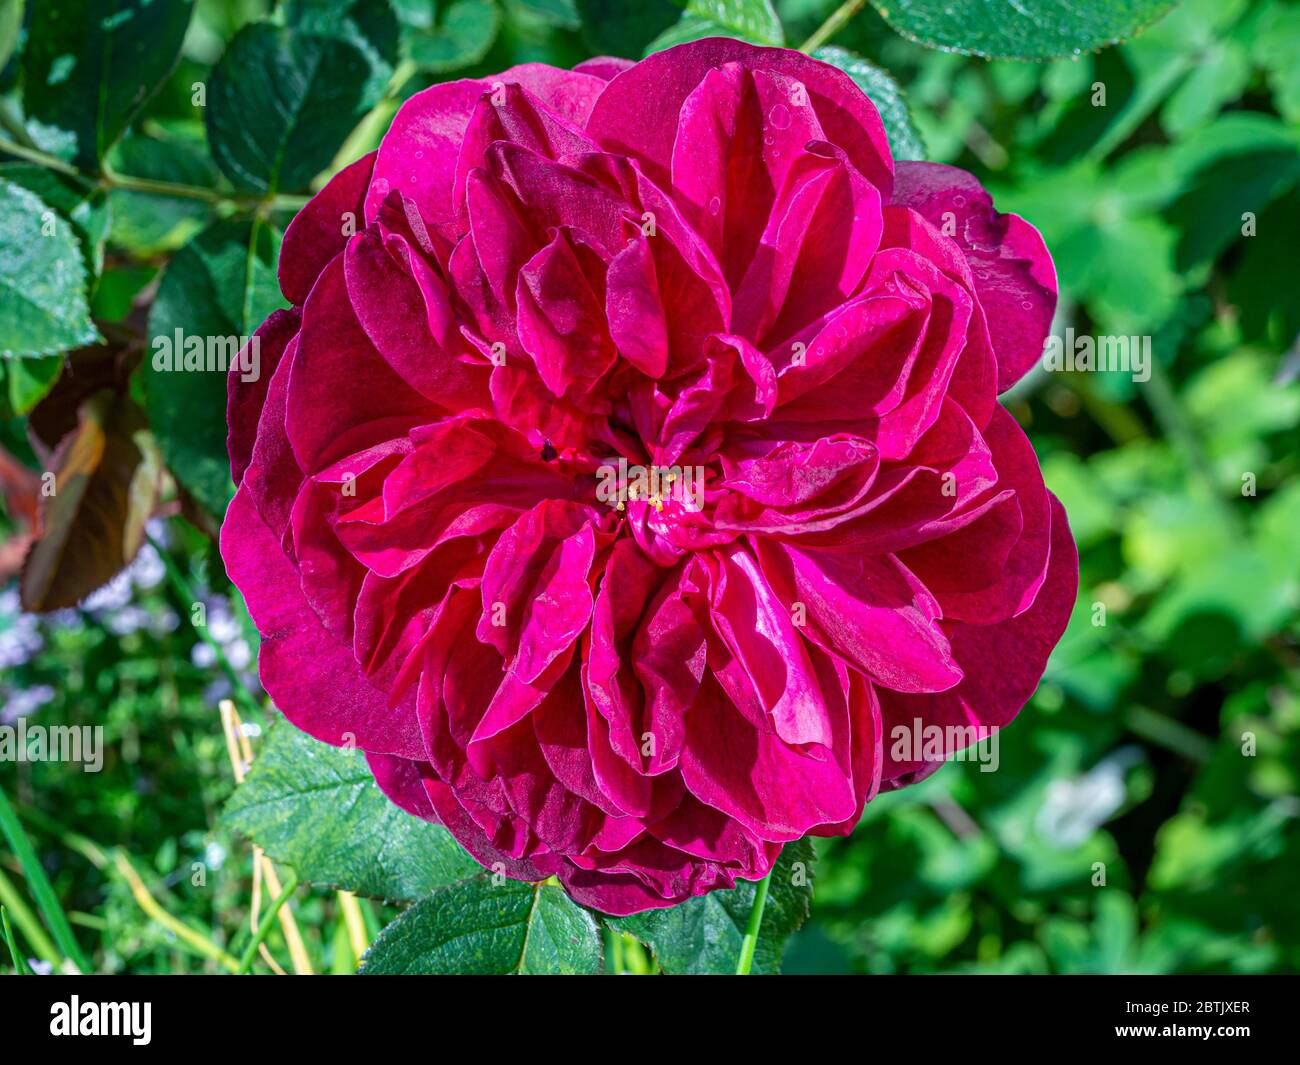 Nahaufnahme einer purpurroten Strauchrose namens Rosa Darcey Bussell, die in einem Garten wächst Stockfoto